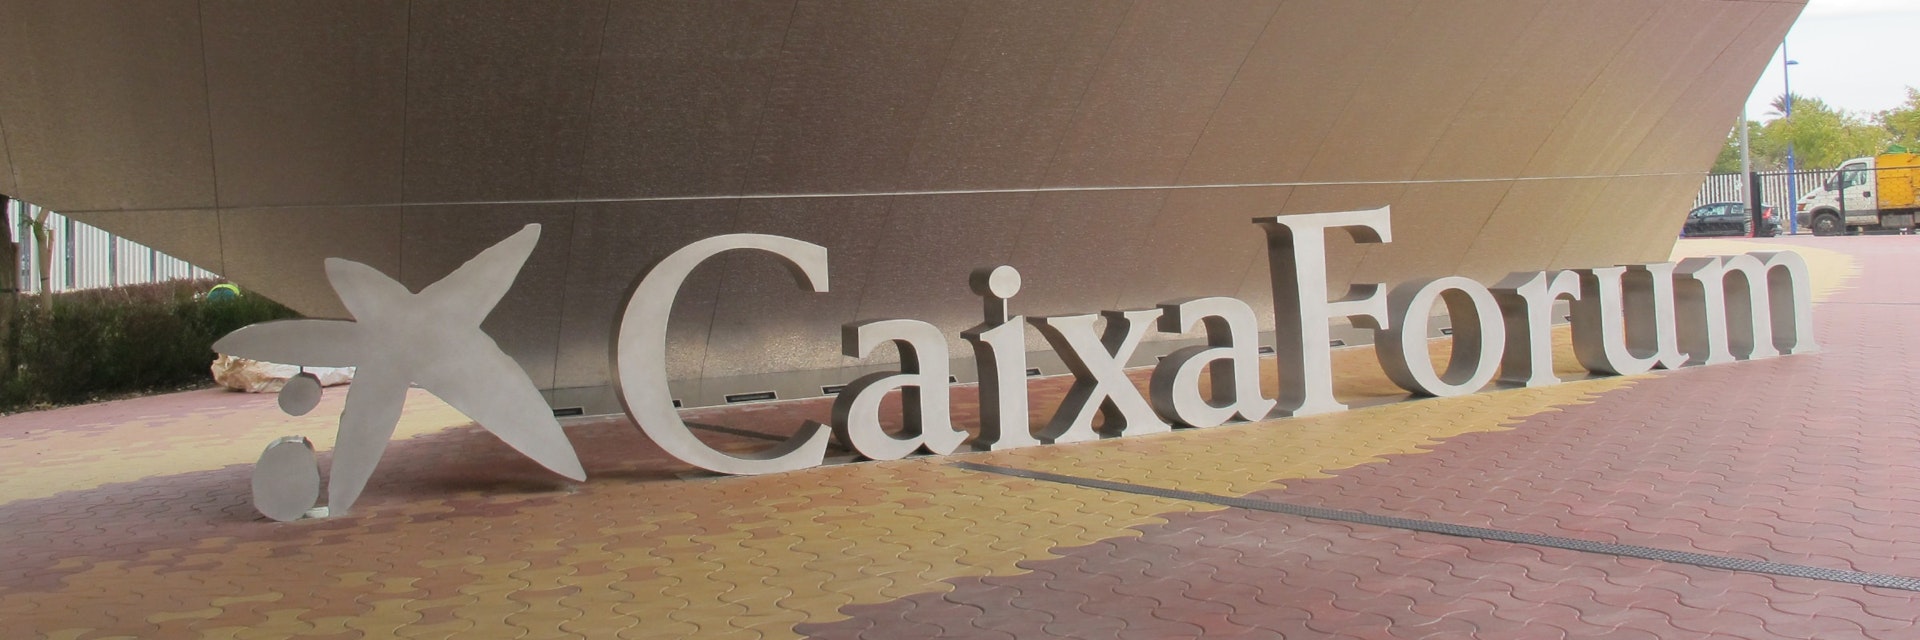 Caixa Forum exterior with logo